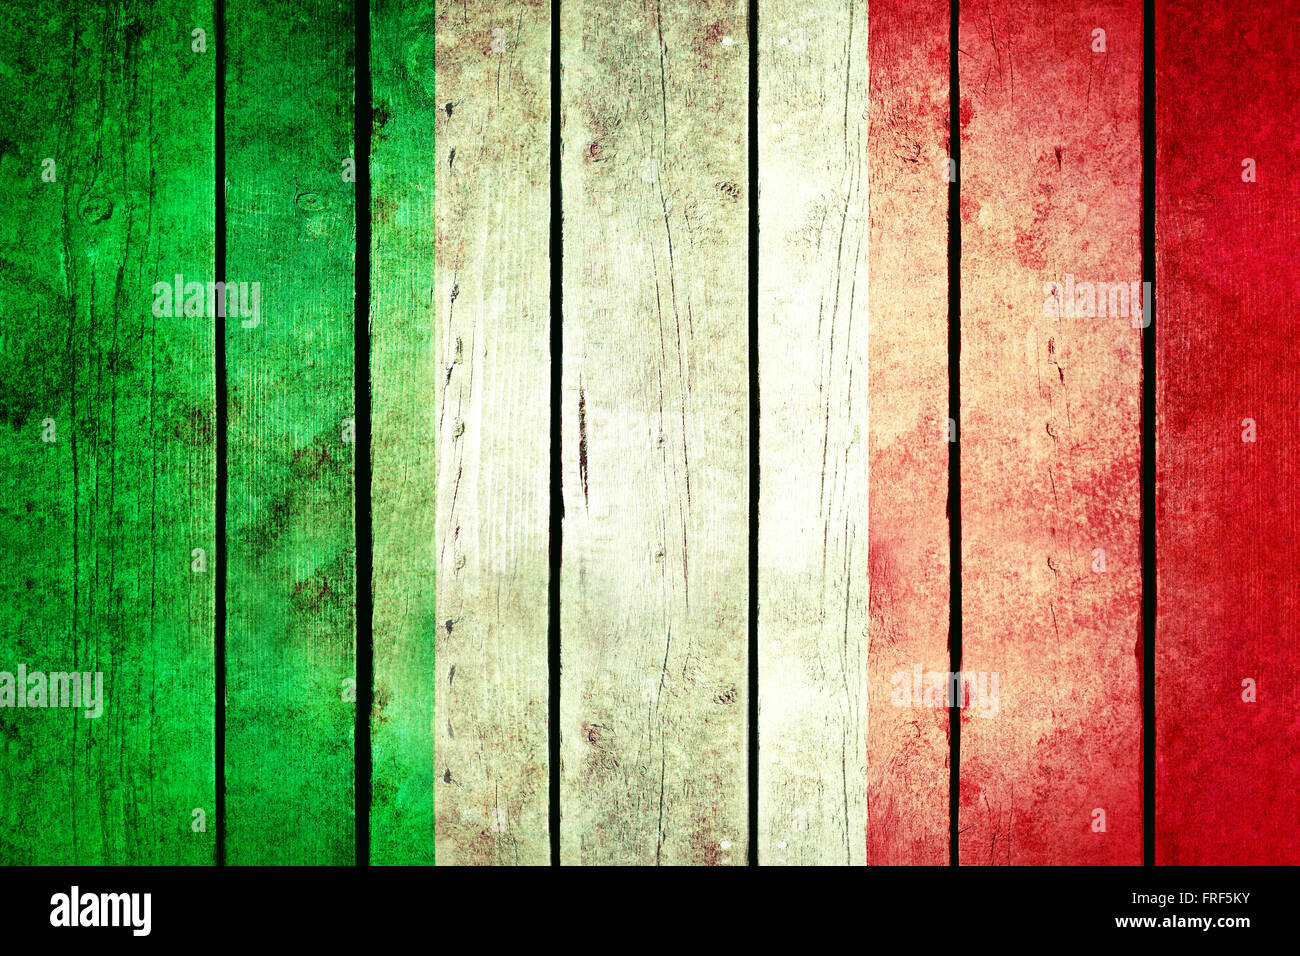 Grunge flag en Italie. Italie drapeau peint sur le vieux bois. Vintage Retro photo de ma collection de drapeaux. Banque D'Images